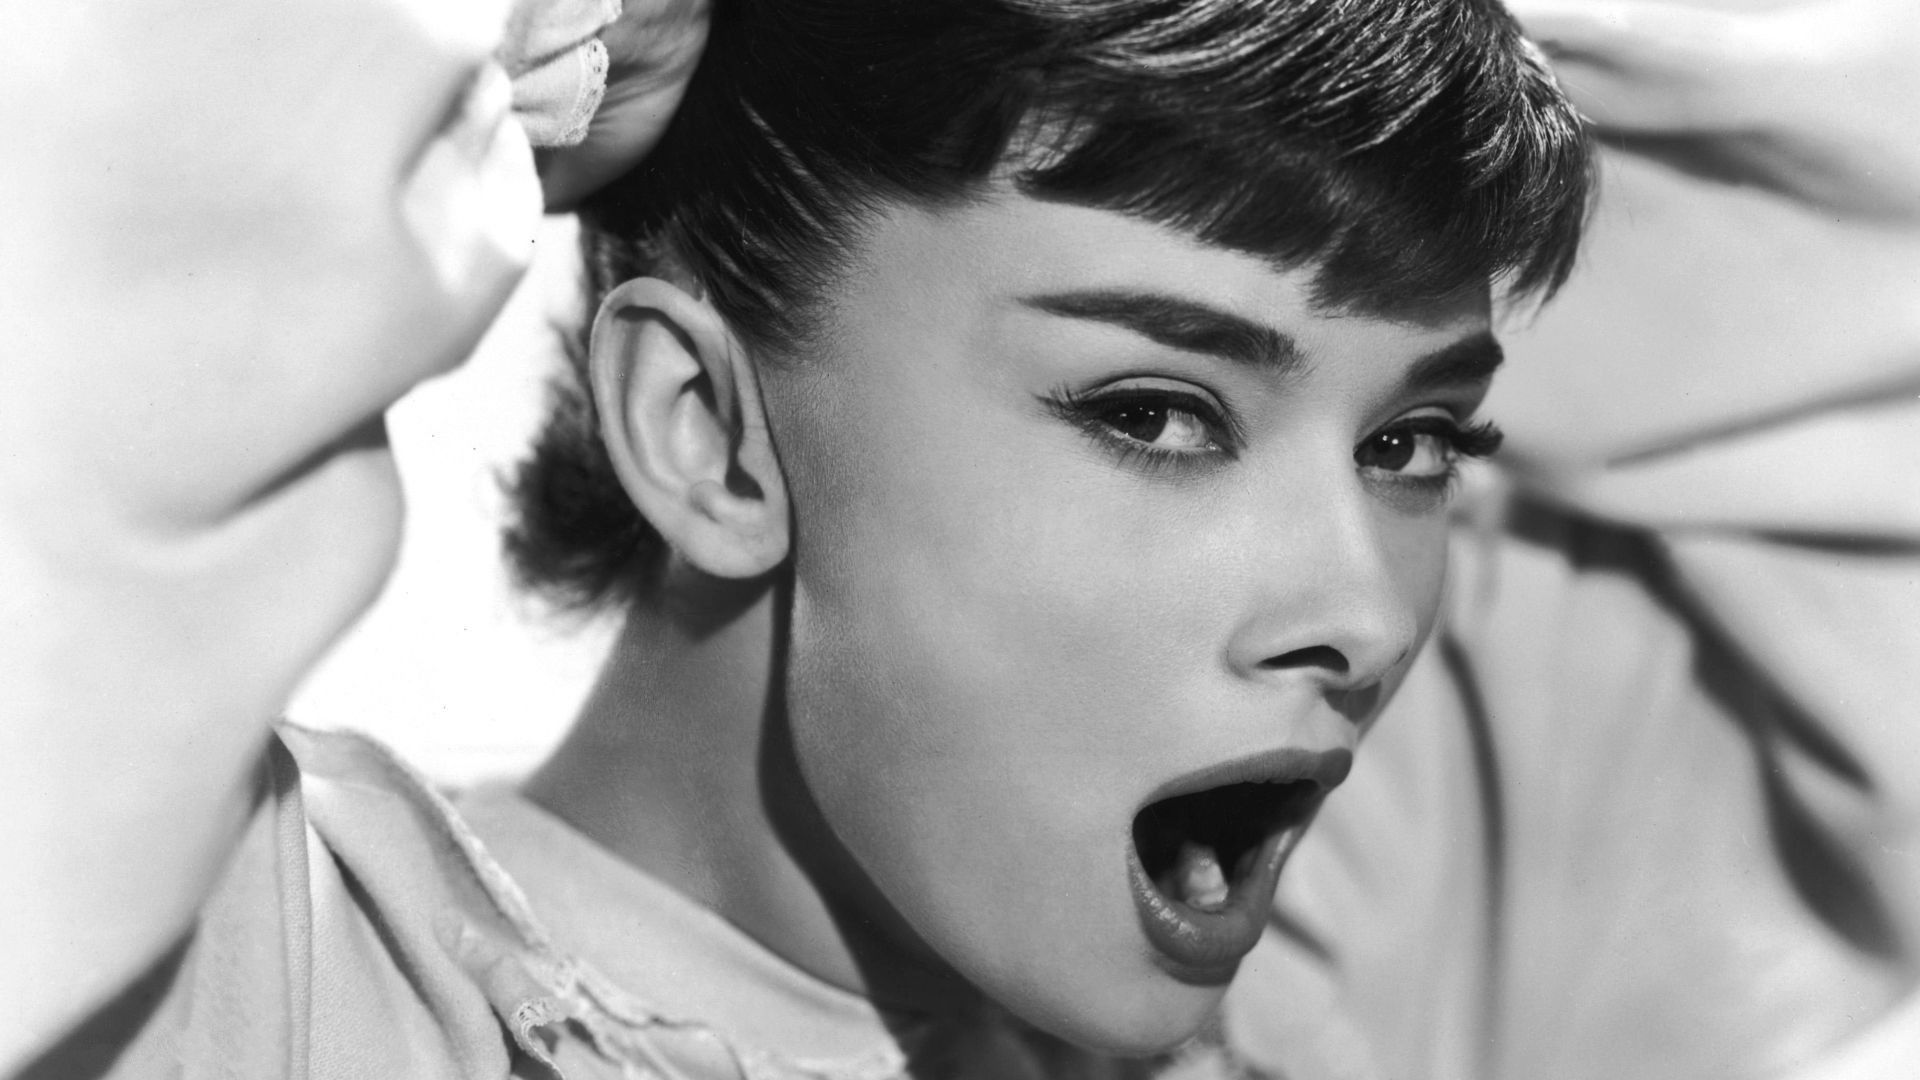 Audrey Hepburn Wallpapers 4k Hd Audrey Hepburn Backgrounds On Wallpaperbat